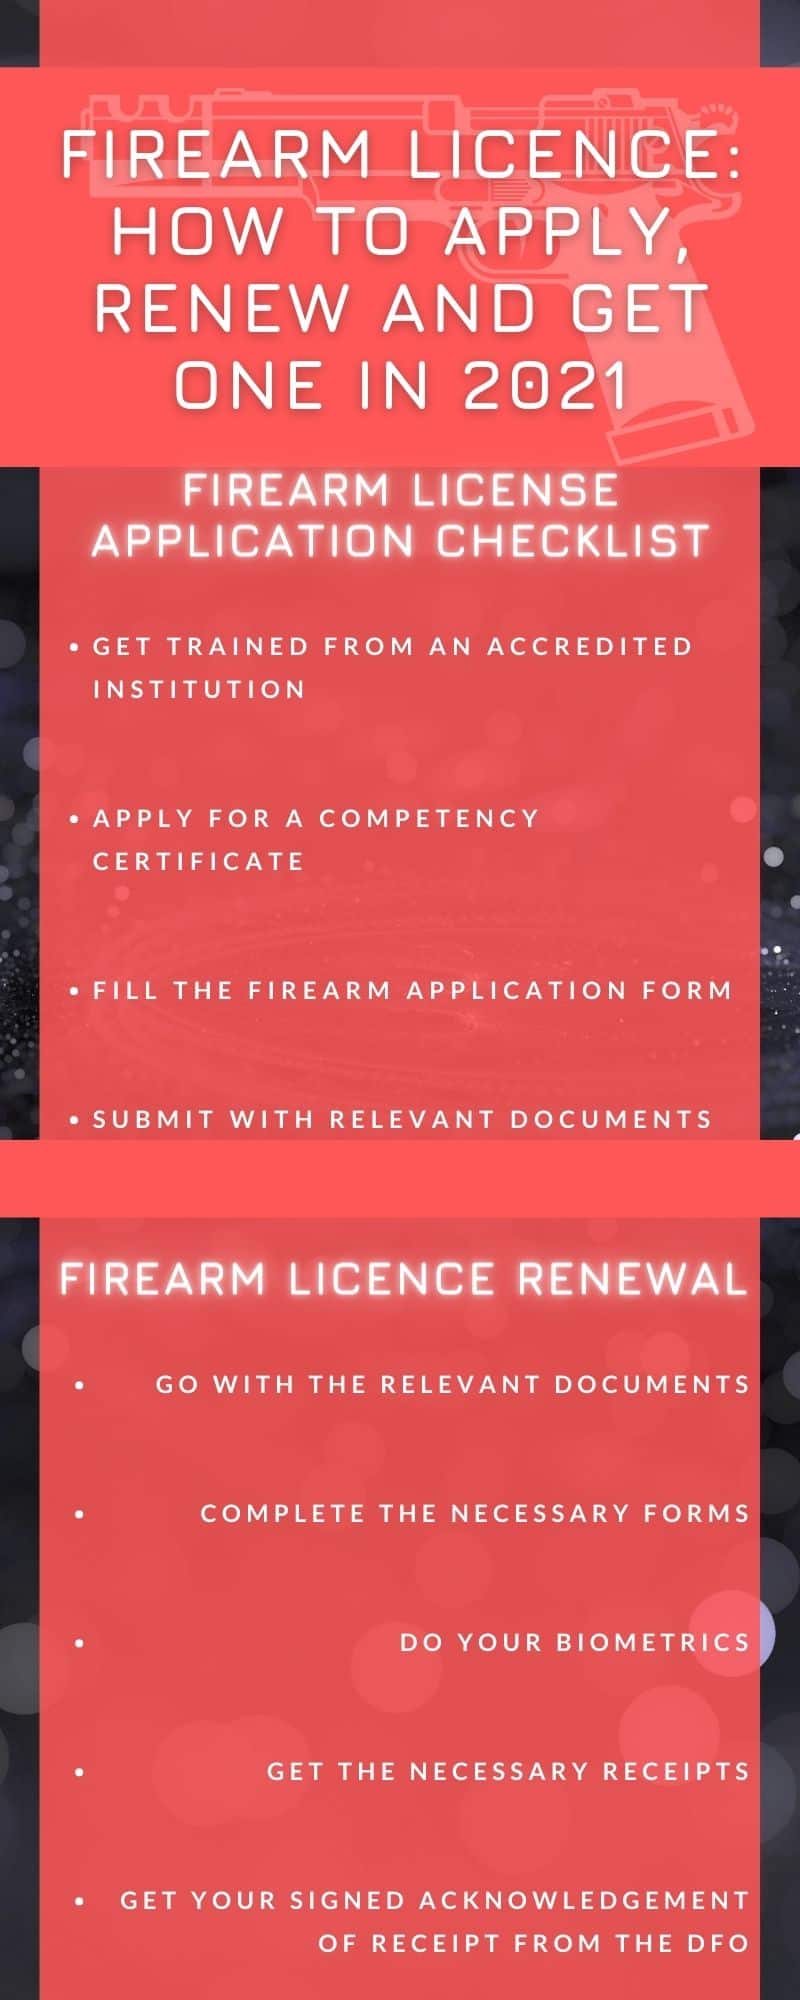 Firearm licence